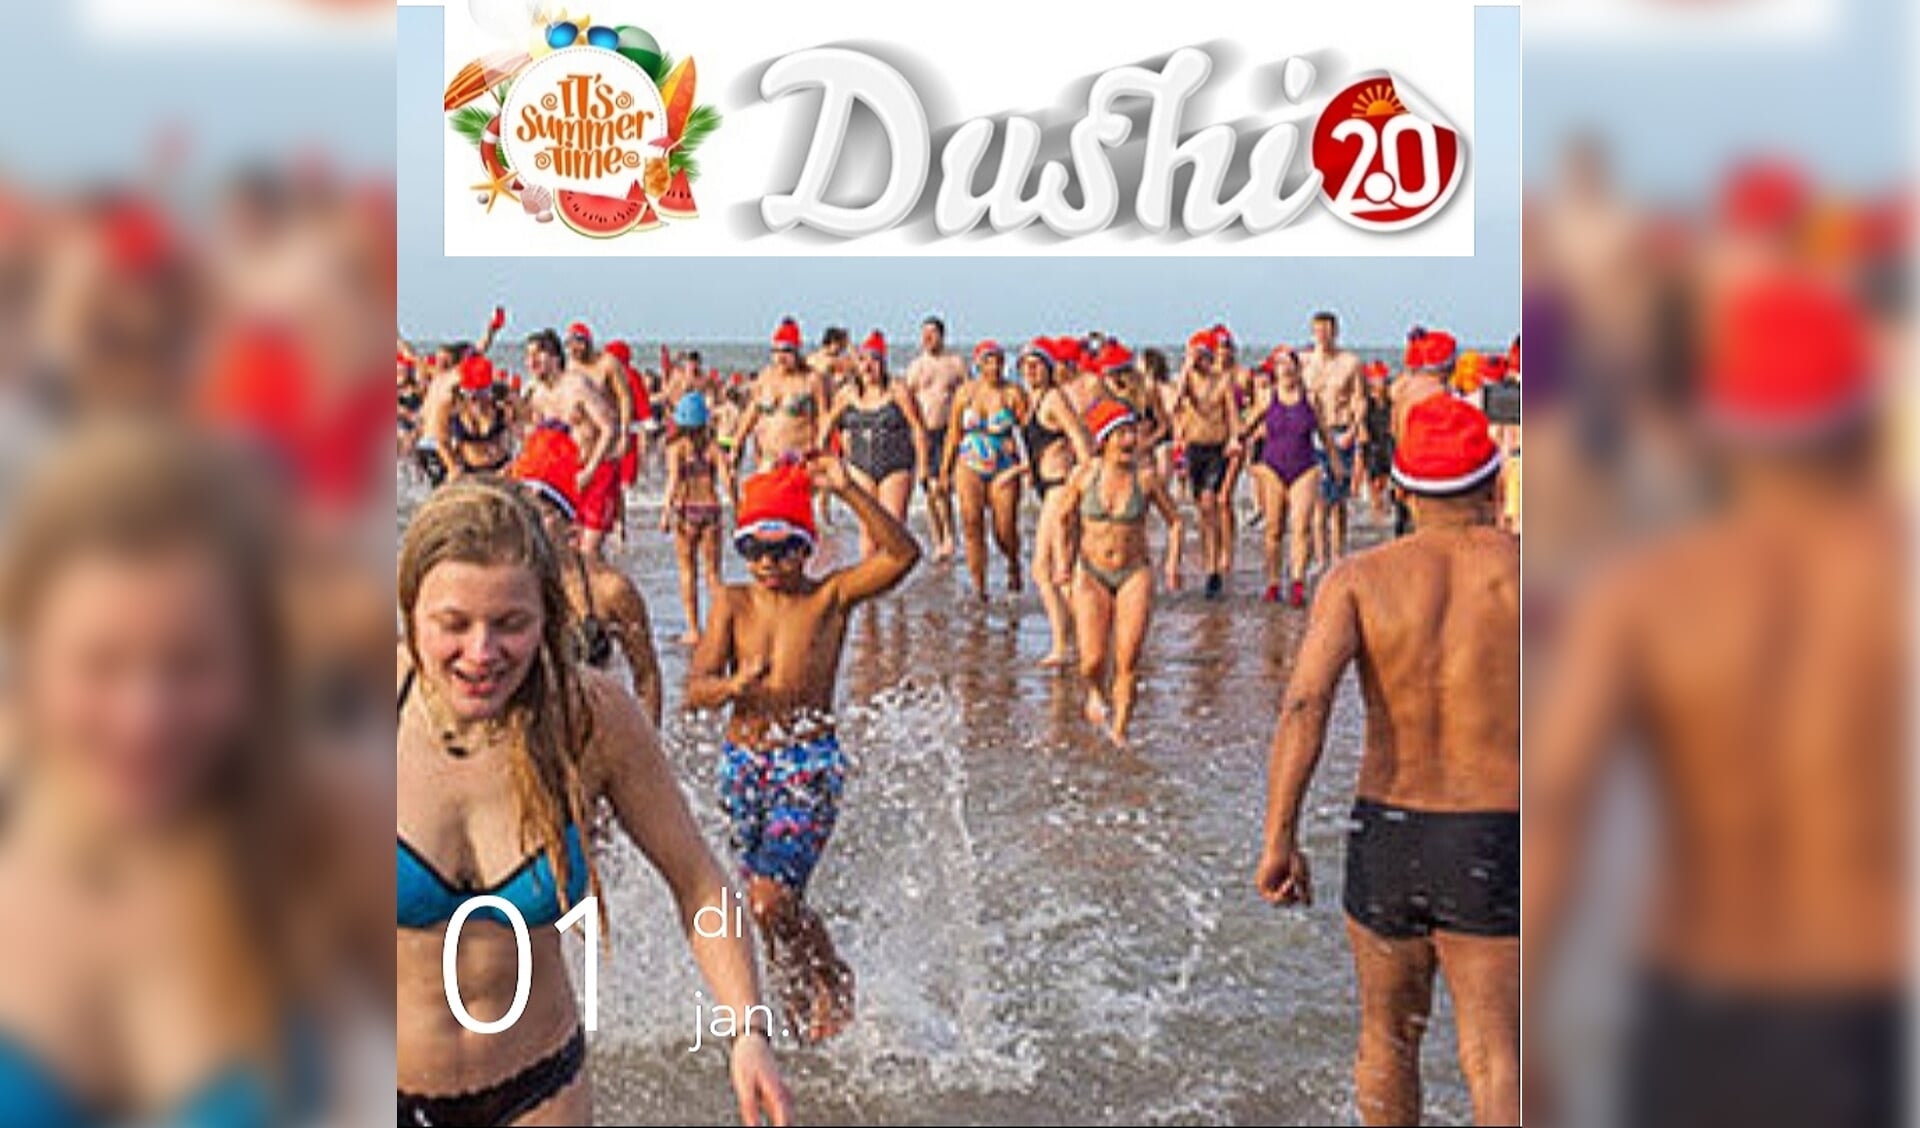 Duik bij Dushi 2.0 het nieuwe jaar in!